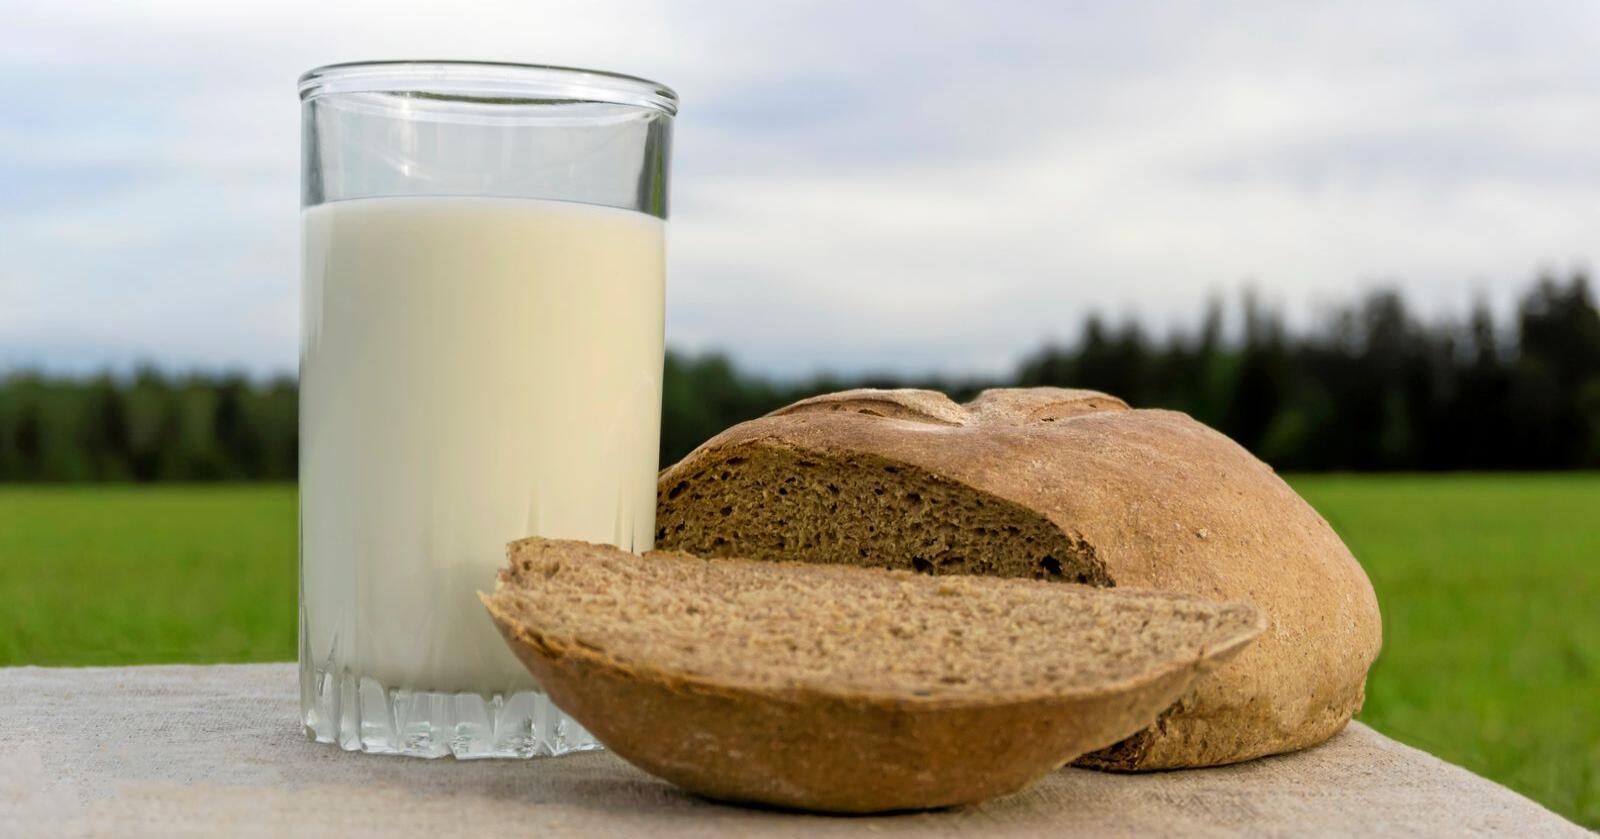 Skal Norge være selvforsynt i en krisesituasjon kan det bli behov for flere melkekyr, mens det bør være nok korn til befolkningen med dagens produksjon. Melk og korn er i dag de to viktigste kildene til energi i nordmenns kosthold  Foto: Mostphotos